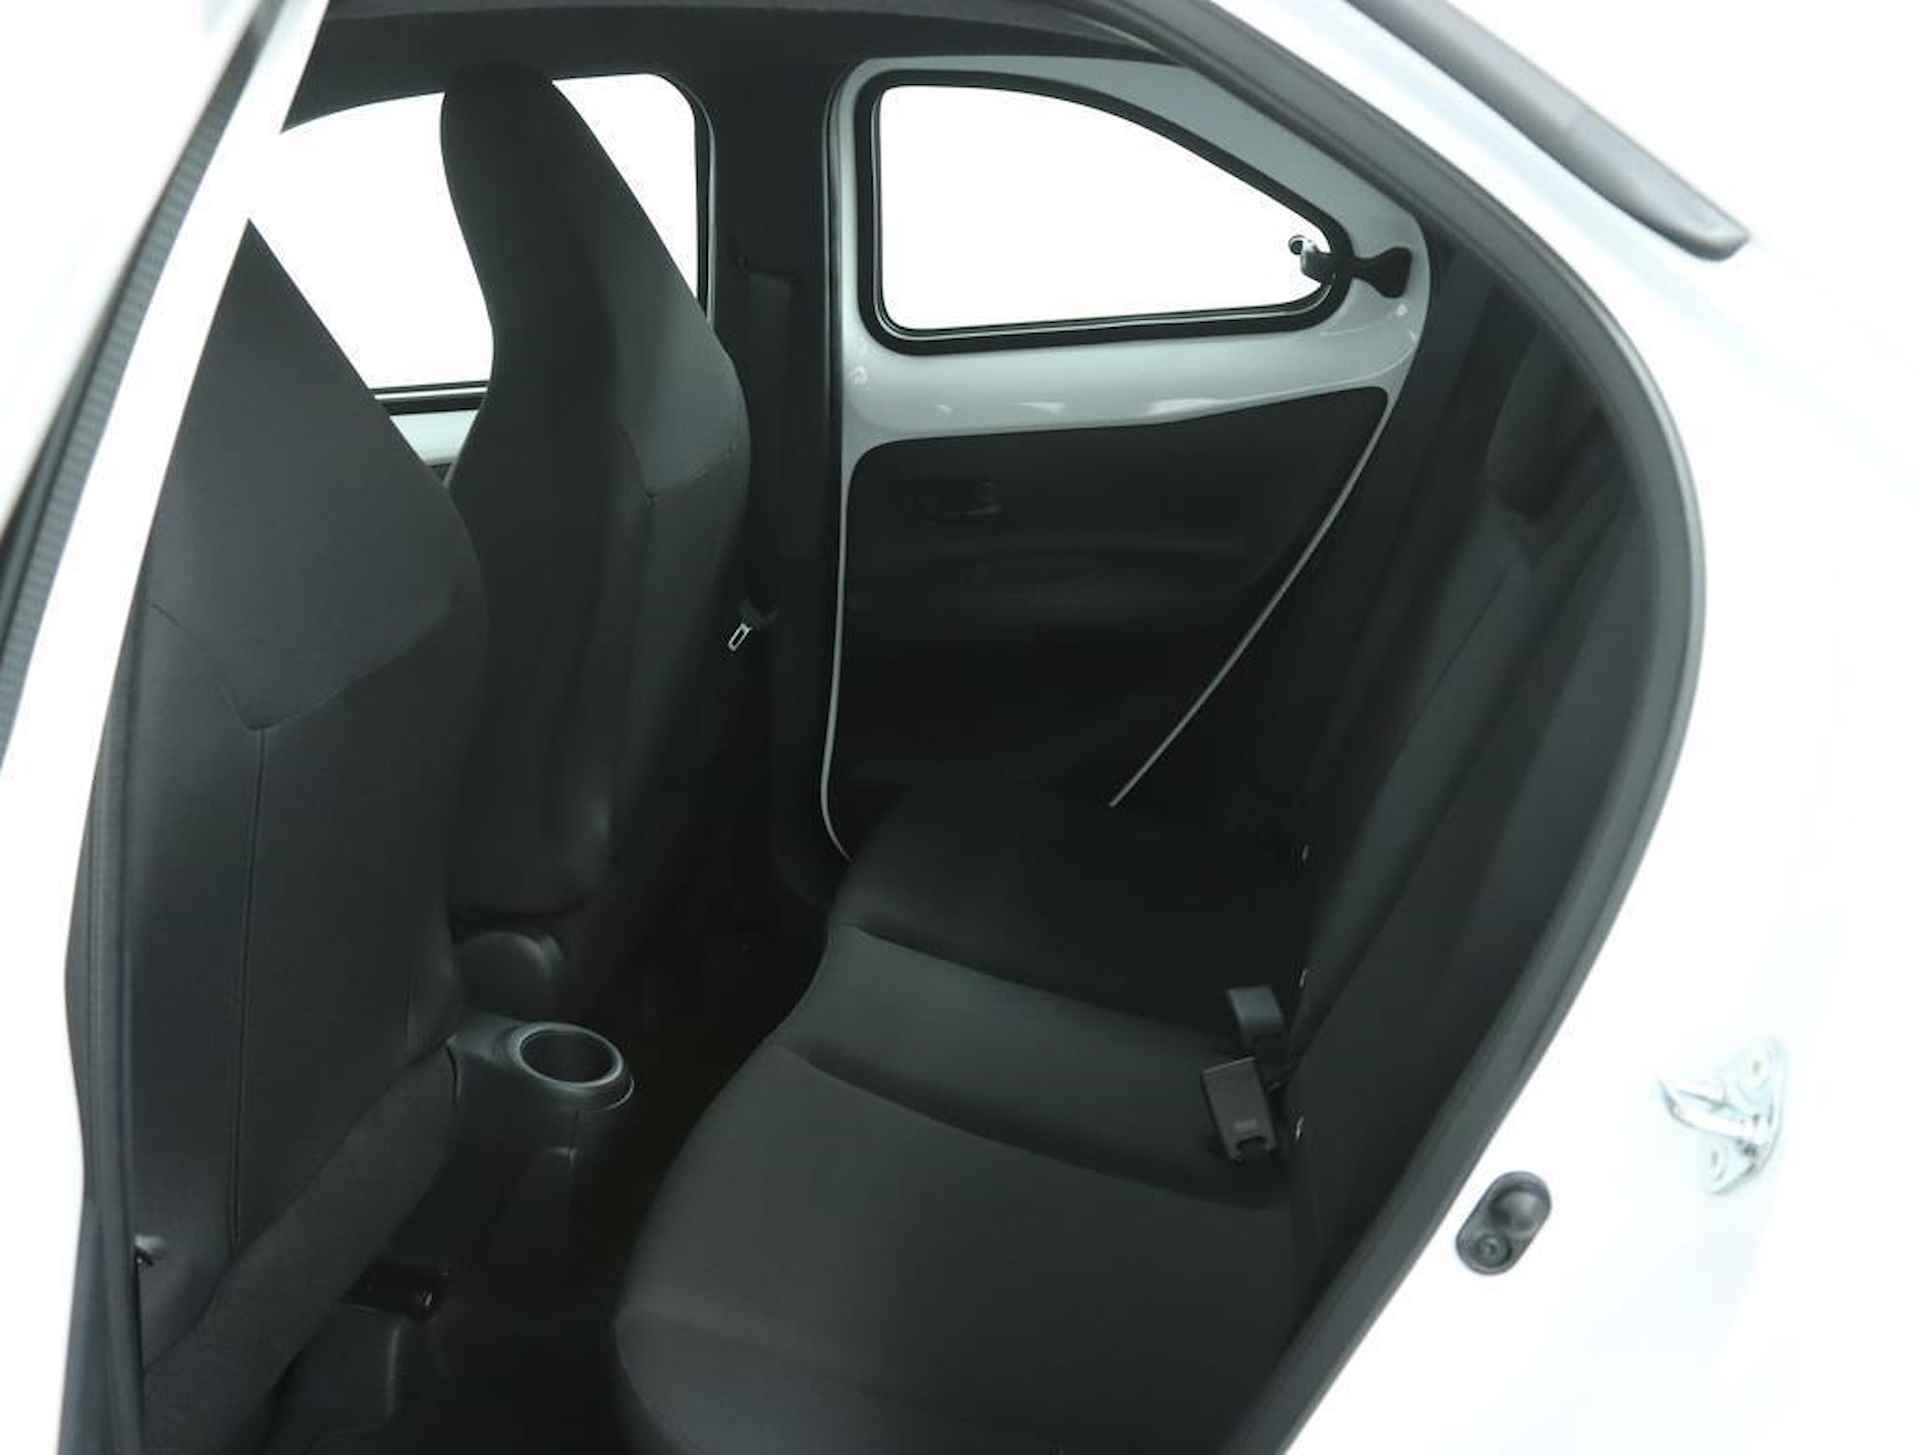 Toyota Aygo X 1.0 VVT-i MT play Actieprijs | € 19950 |Nieuw uit voorraad | Direct rijden | - 15/42